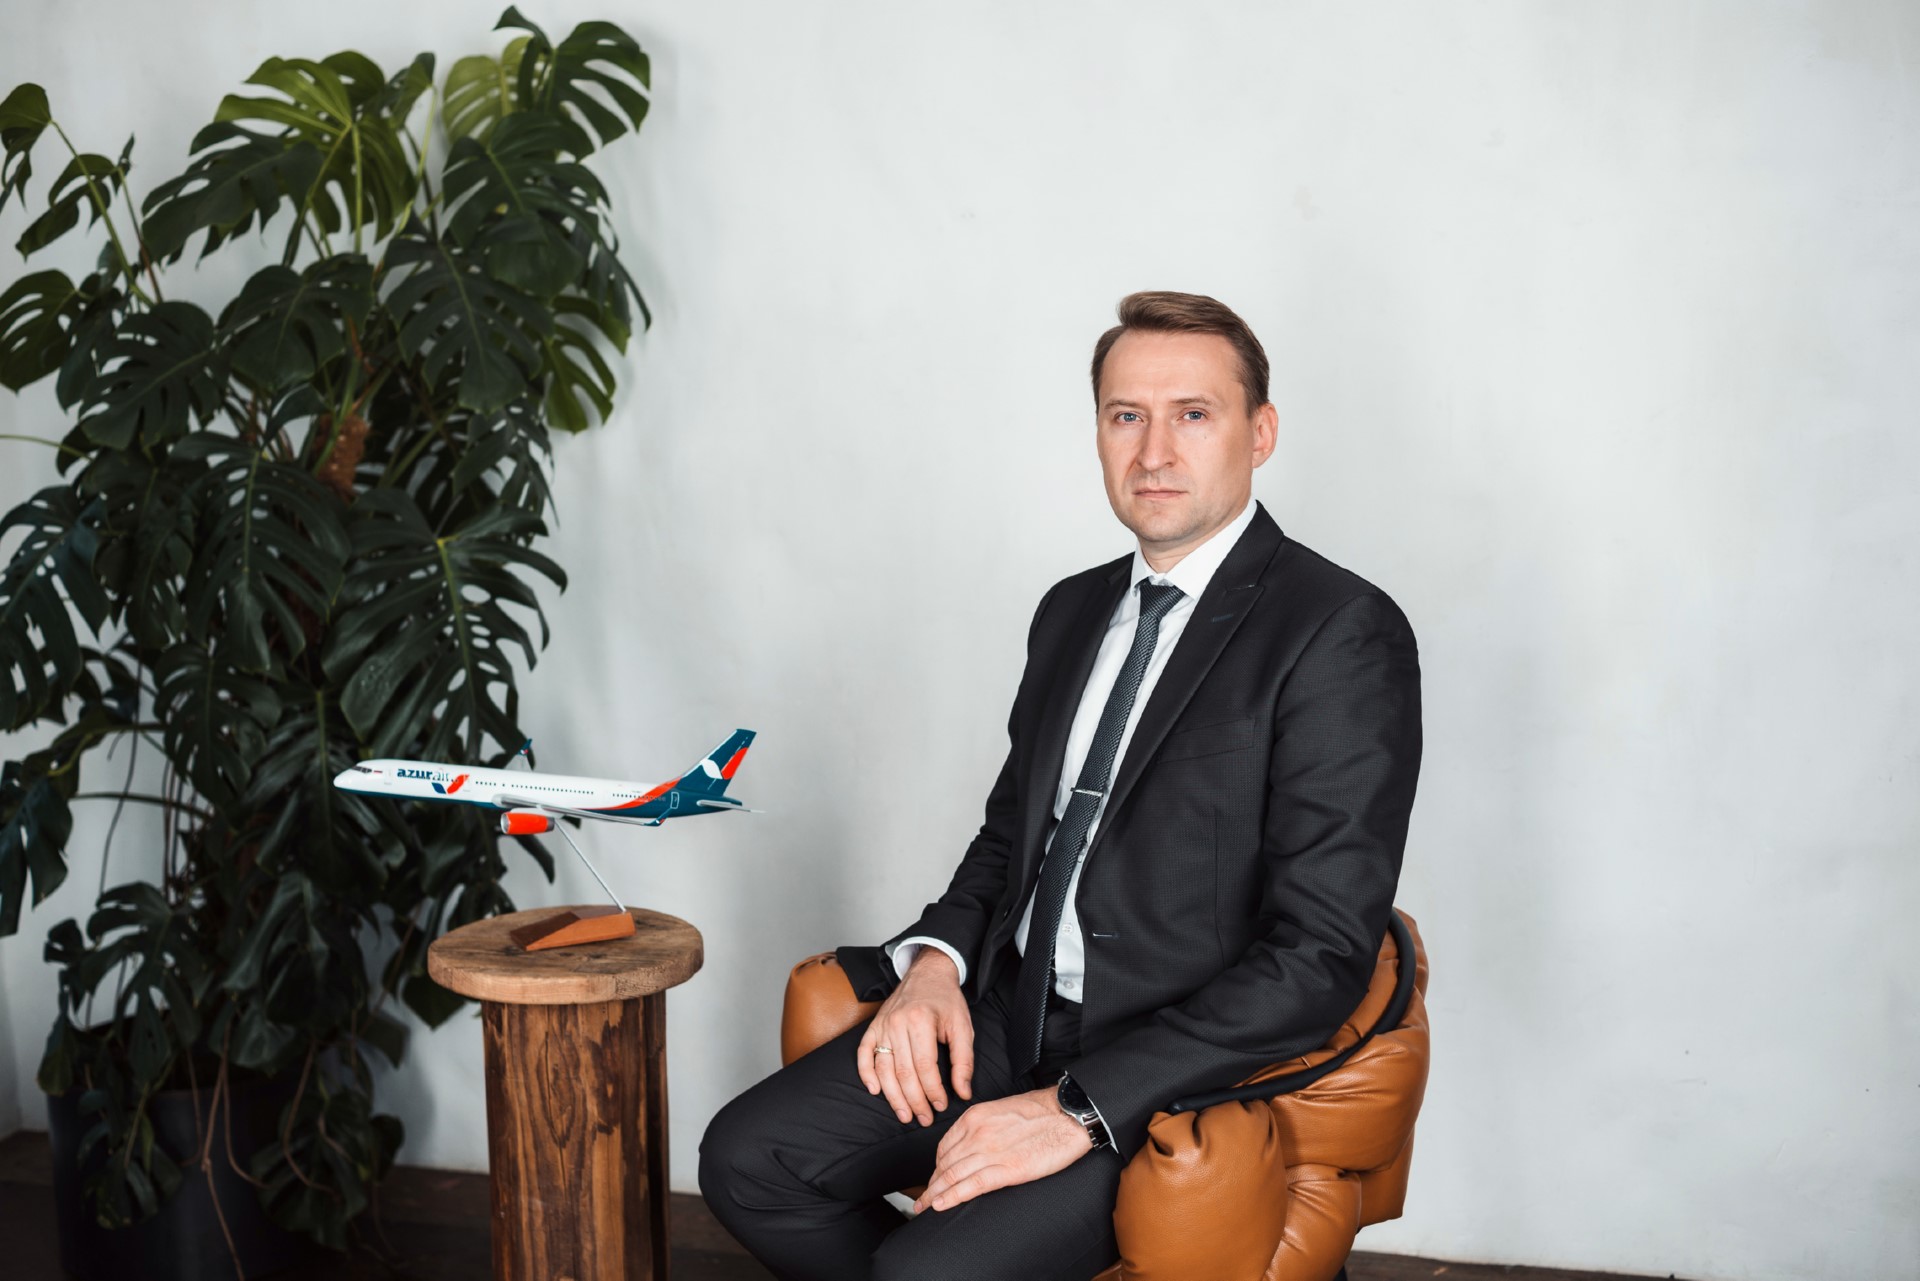 AZUR air, Новости, 01 октября 2021, AZUR air сообщает о смене генерального директора